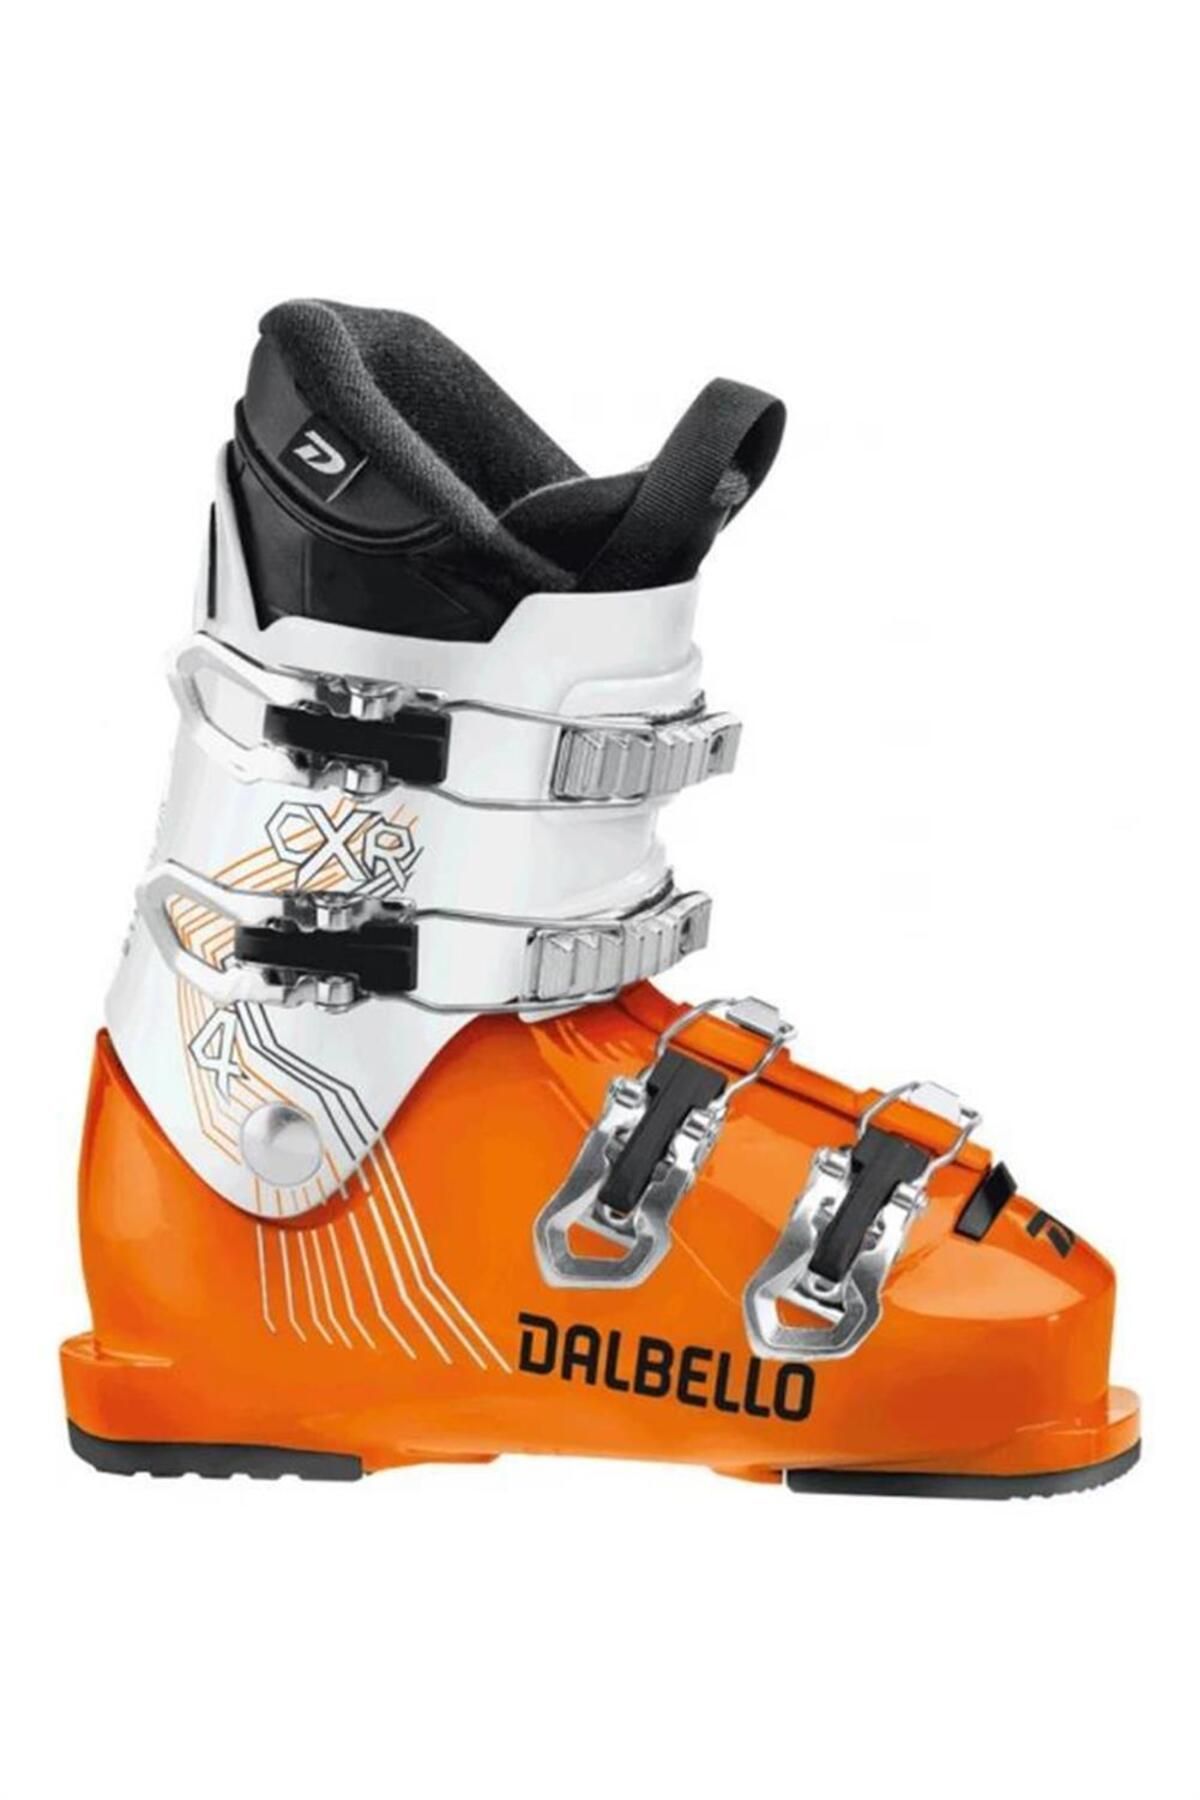 Dalbello Cxr 4.0 Çocuk Kayak Ayakakbısı Turuncu / Beyaz